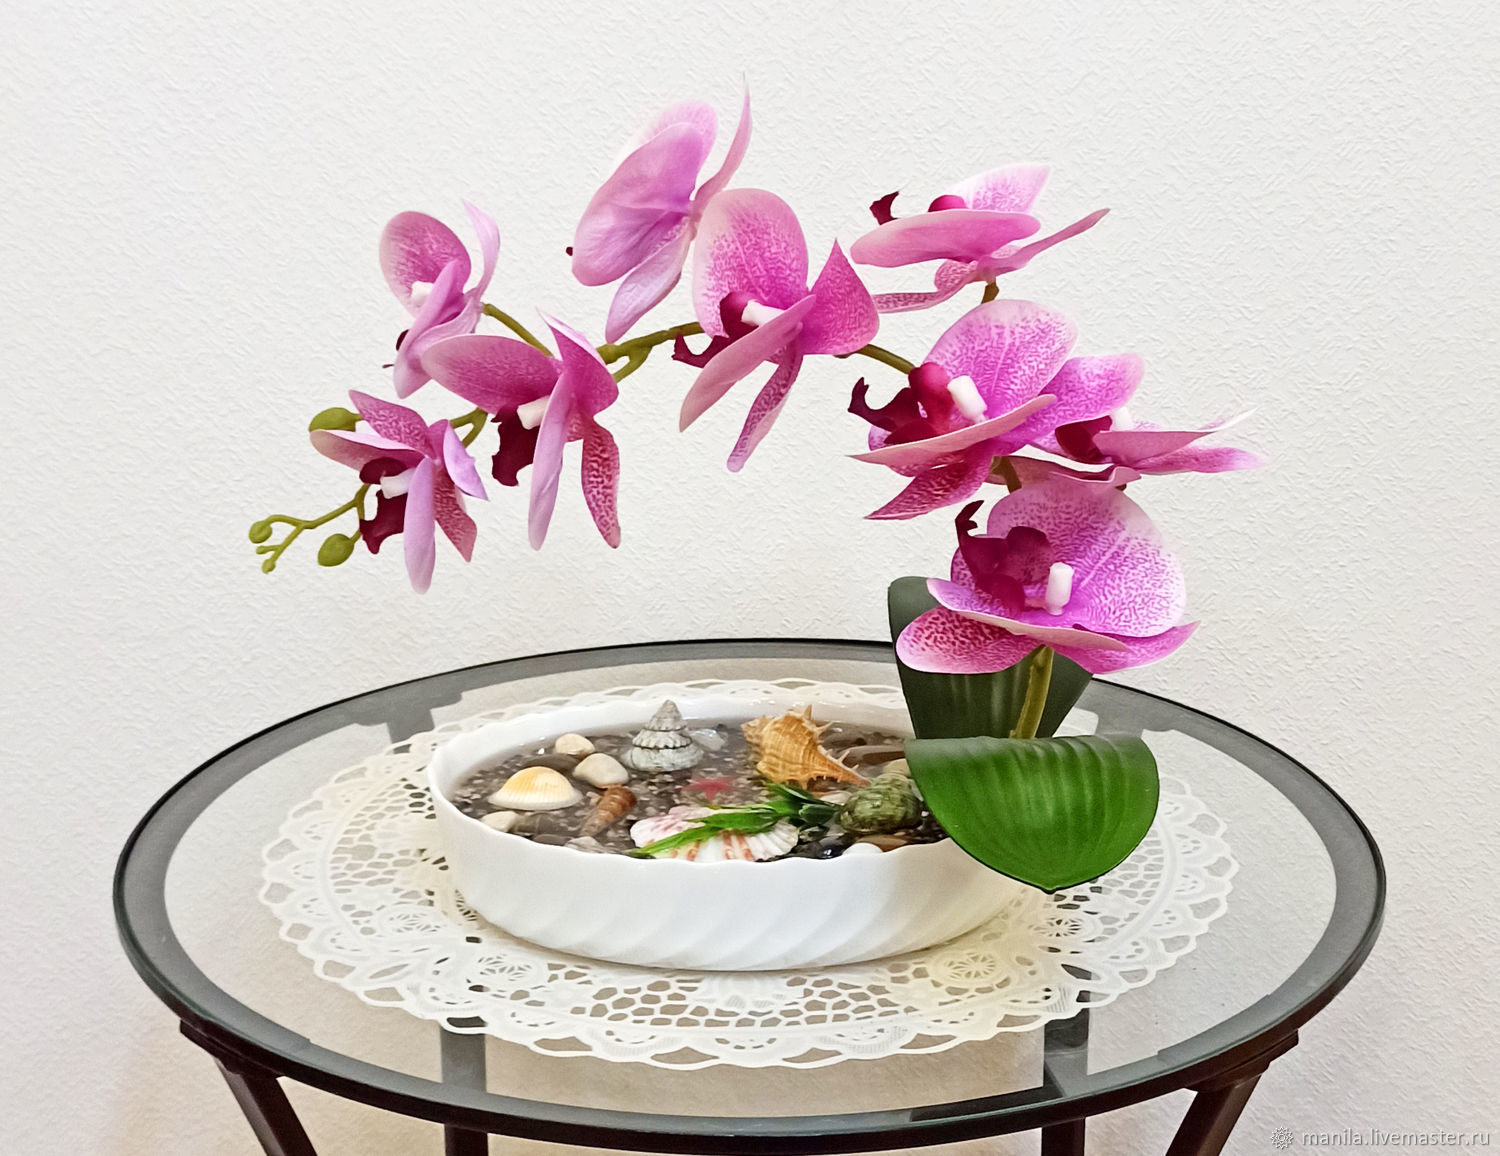 Картины с орхидеями в интерьере по фен шуй